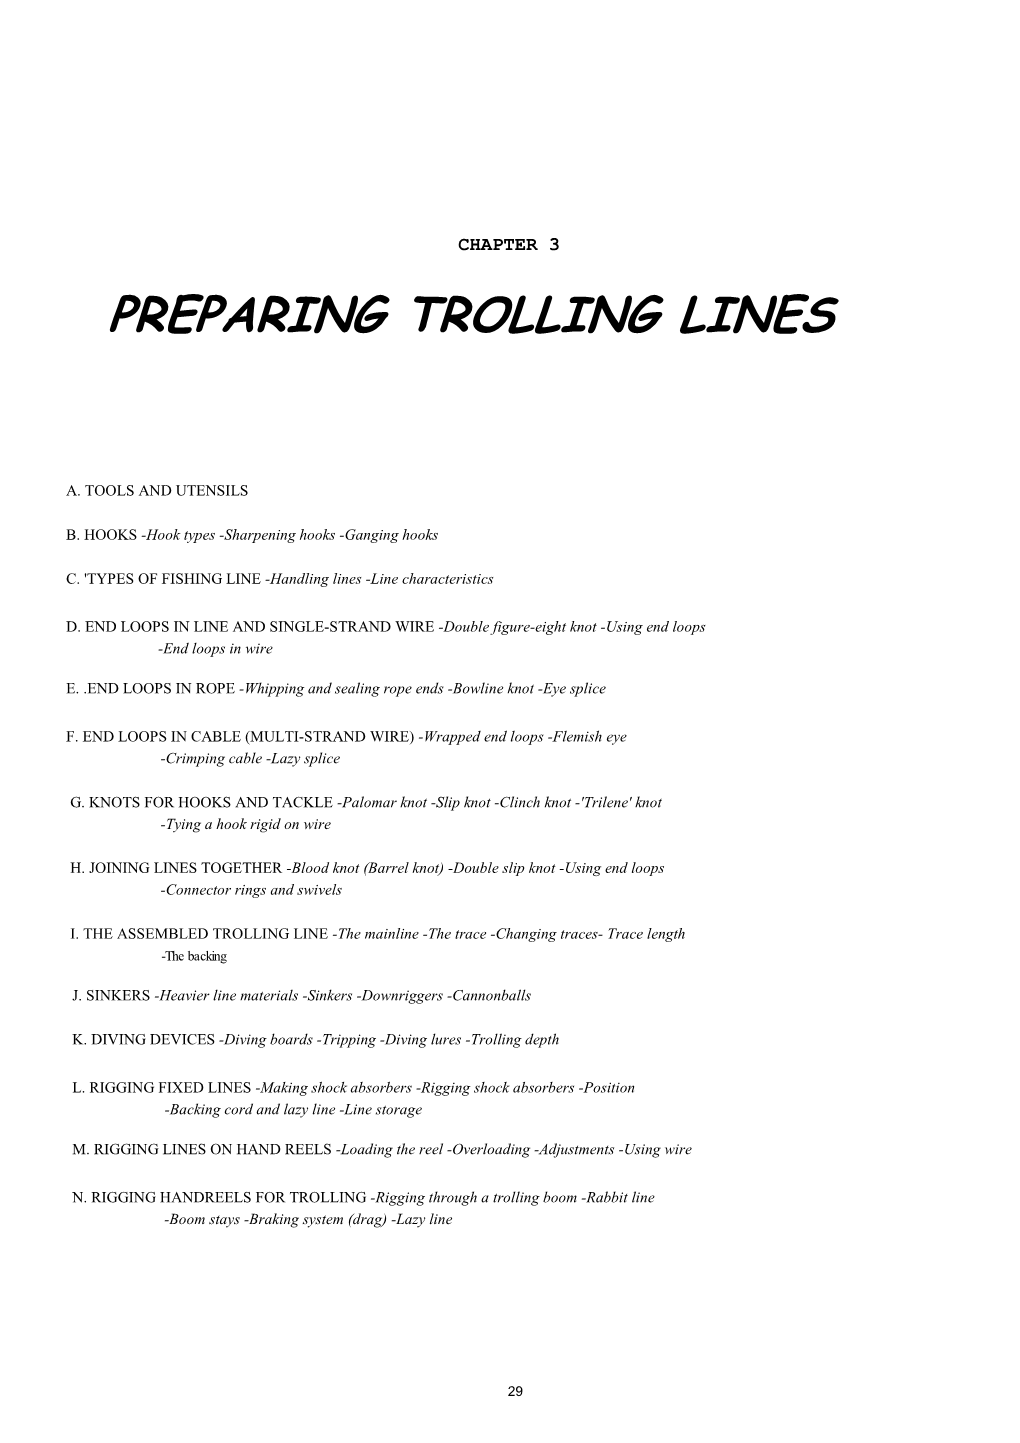 Preparing Trolling Lines